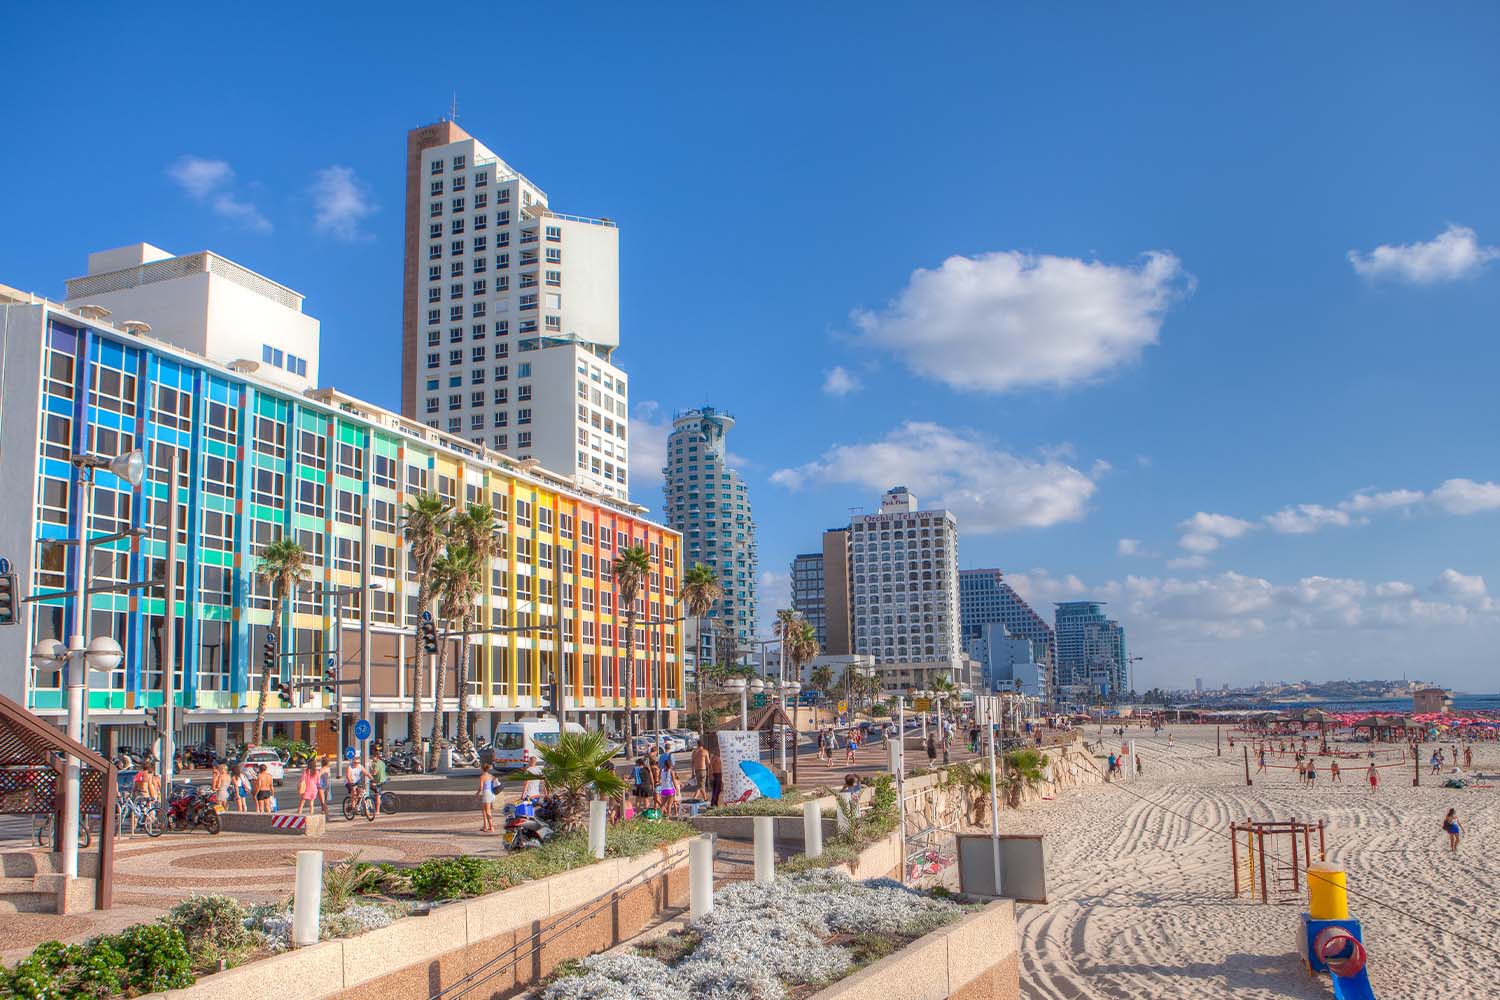 Tel Aviv Beach Promenade